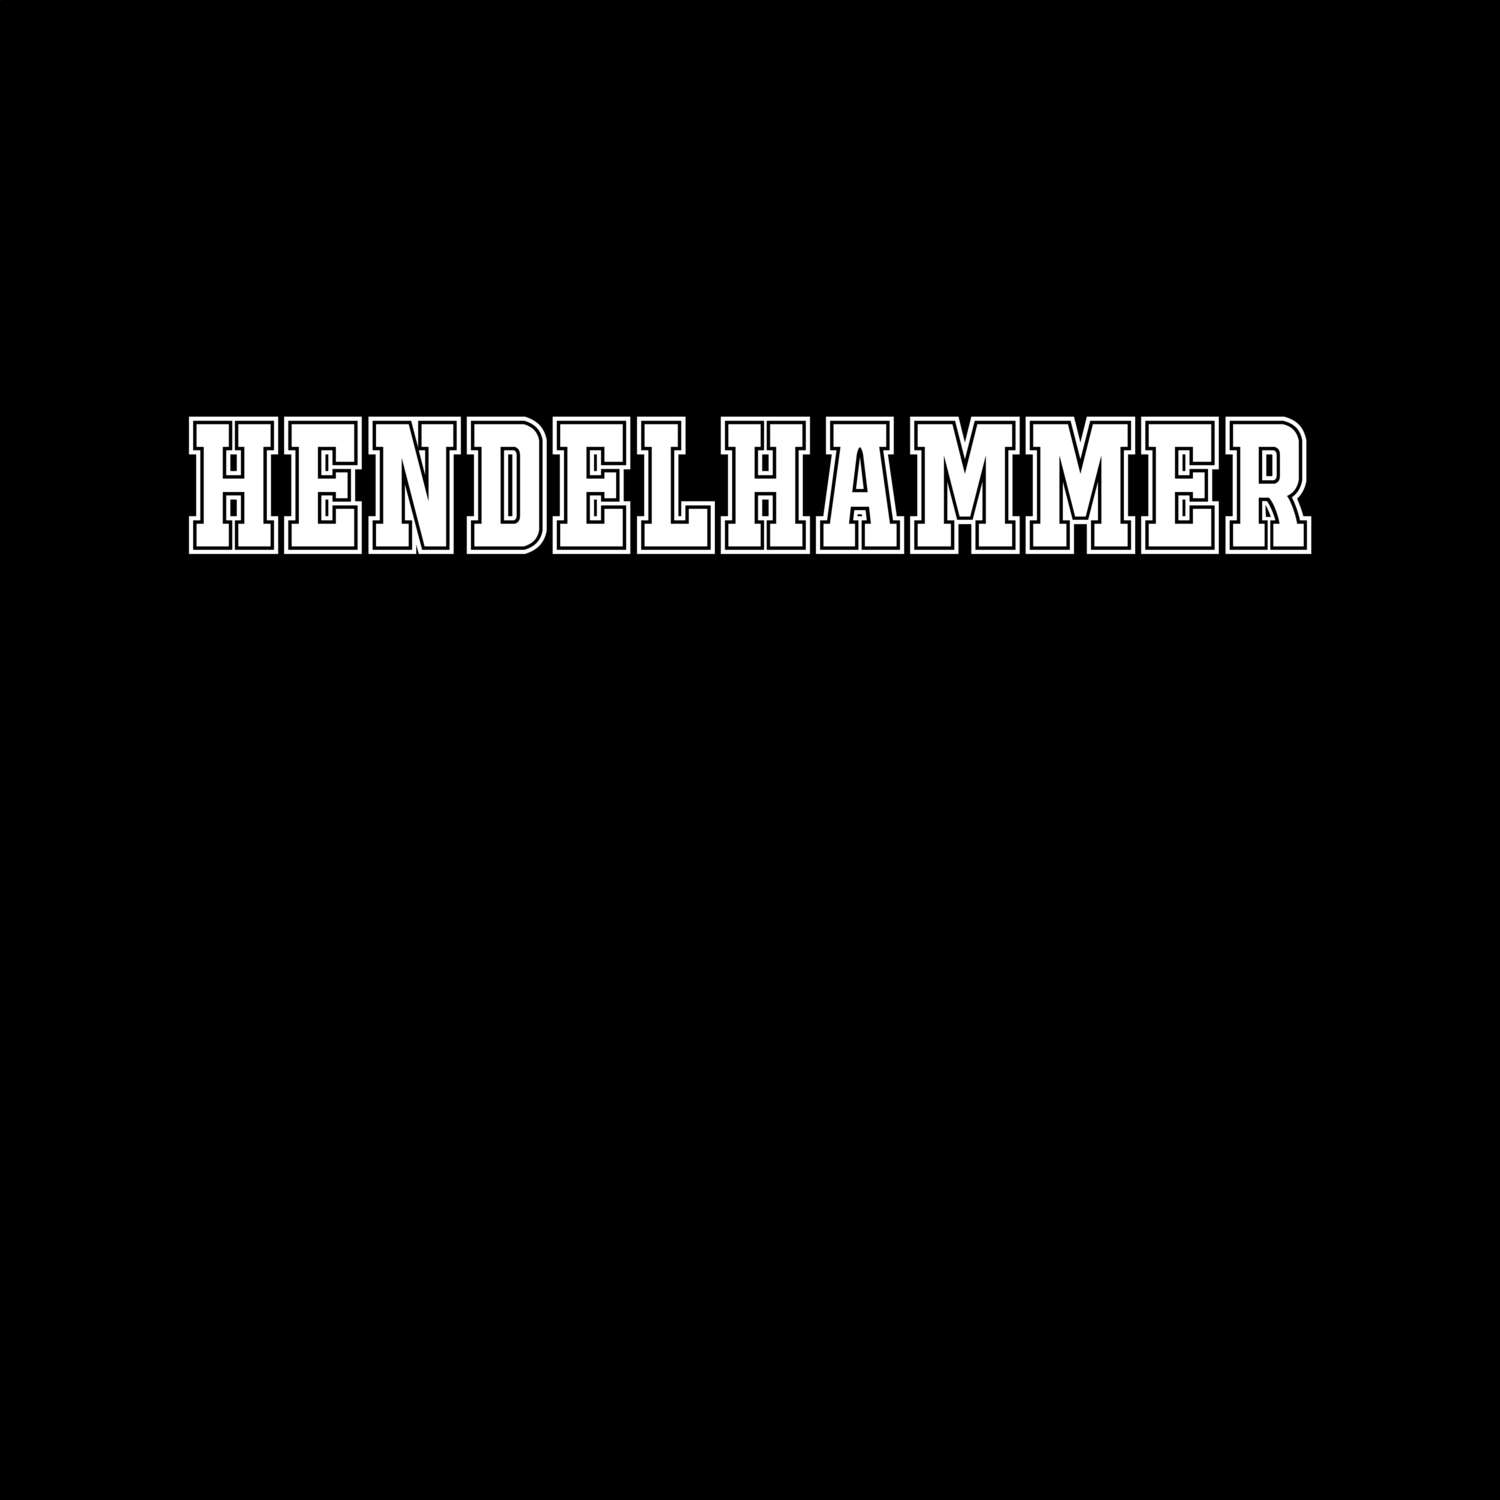 Hendelhammer T-Shirt »Classic«